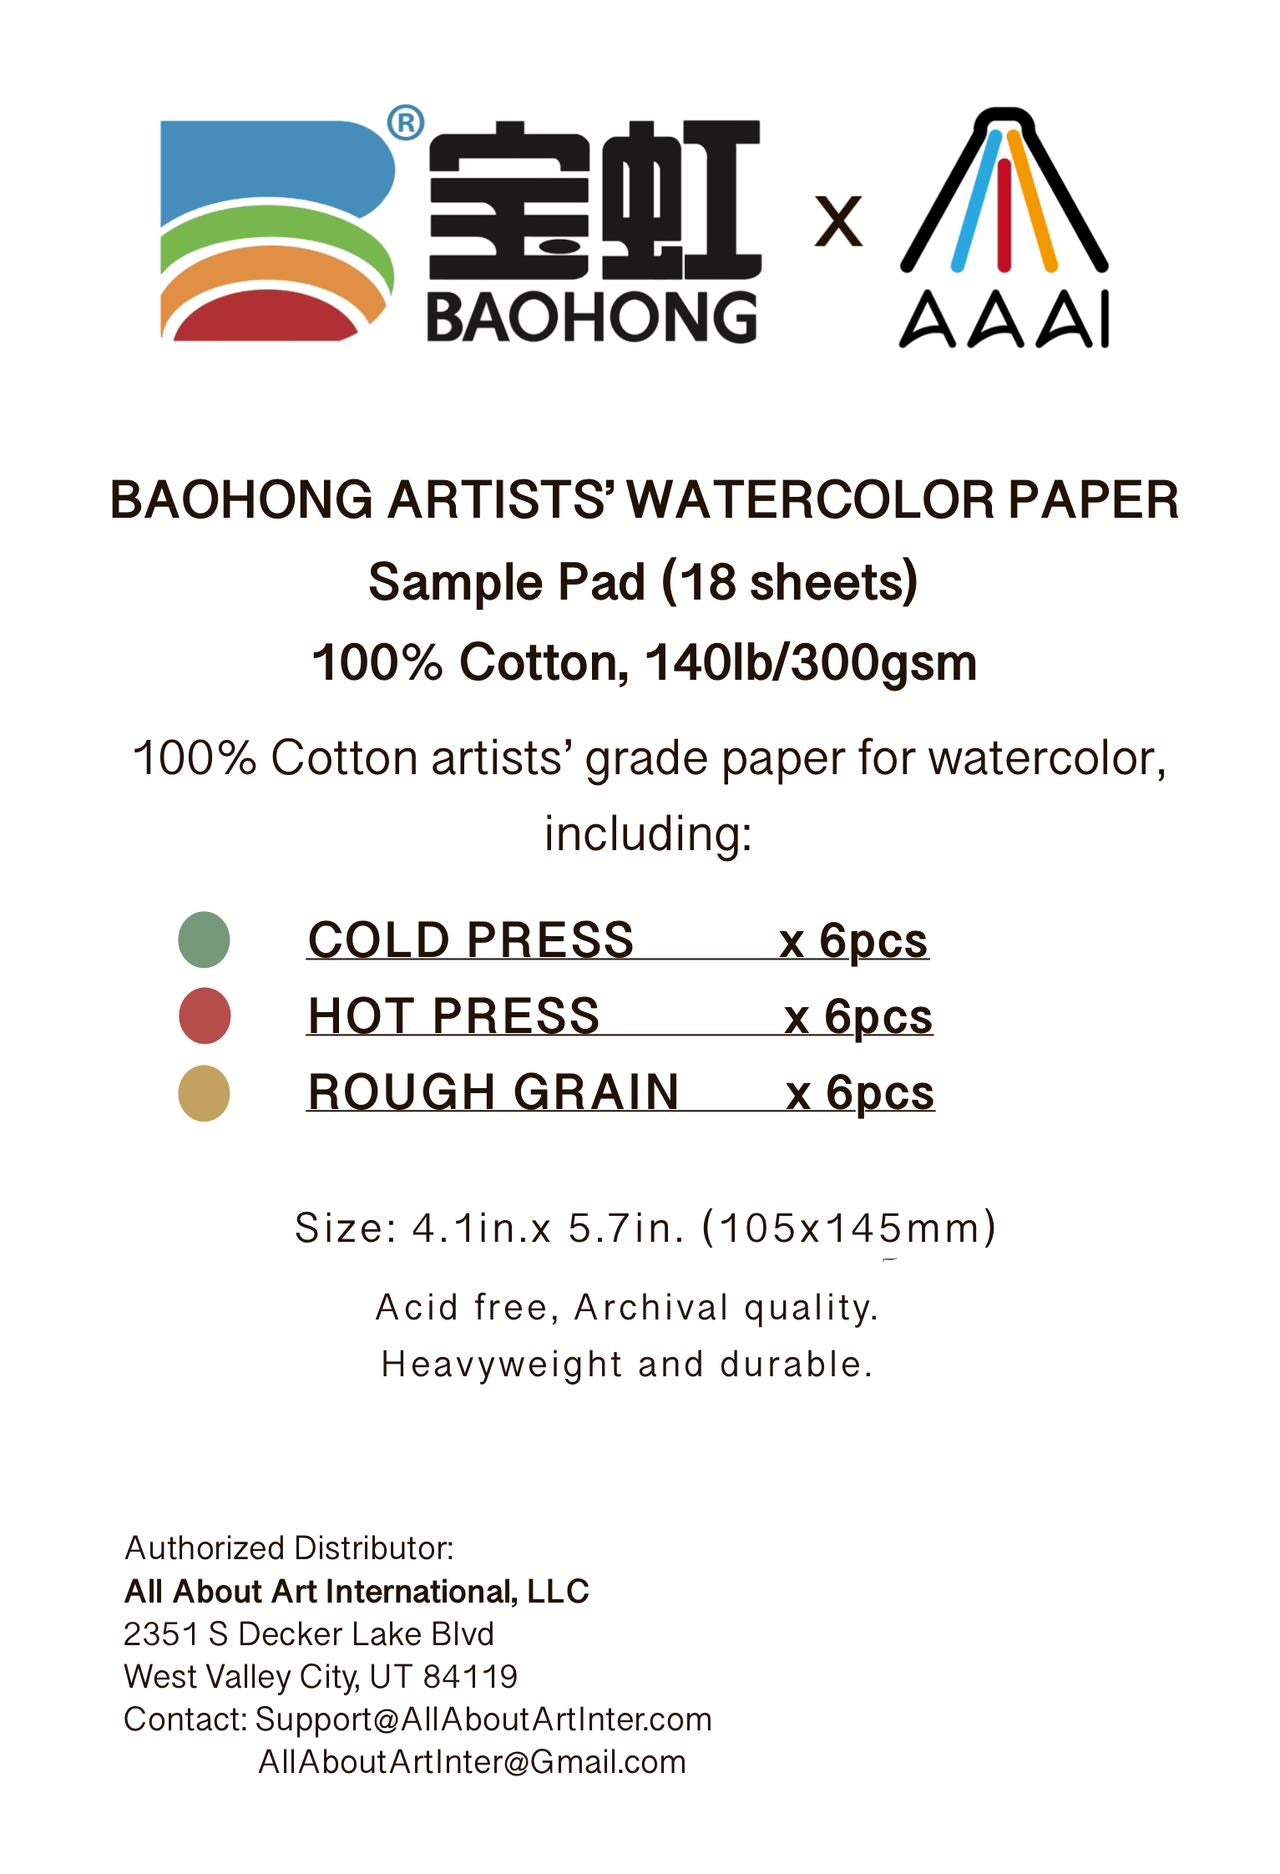 Baohong Watercolor Trial Pad, 4.1x5.7, Artists' Grade, Cold Pressx6, Hot  Press x6, Rough Grain x6, 100% cotton, 140lb/300gsm